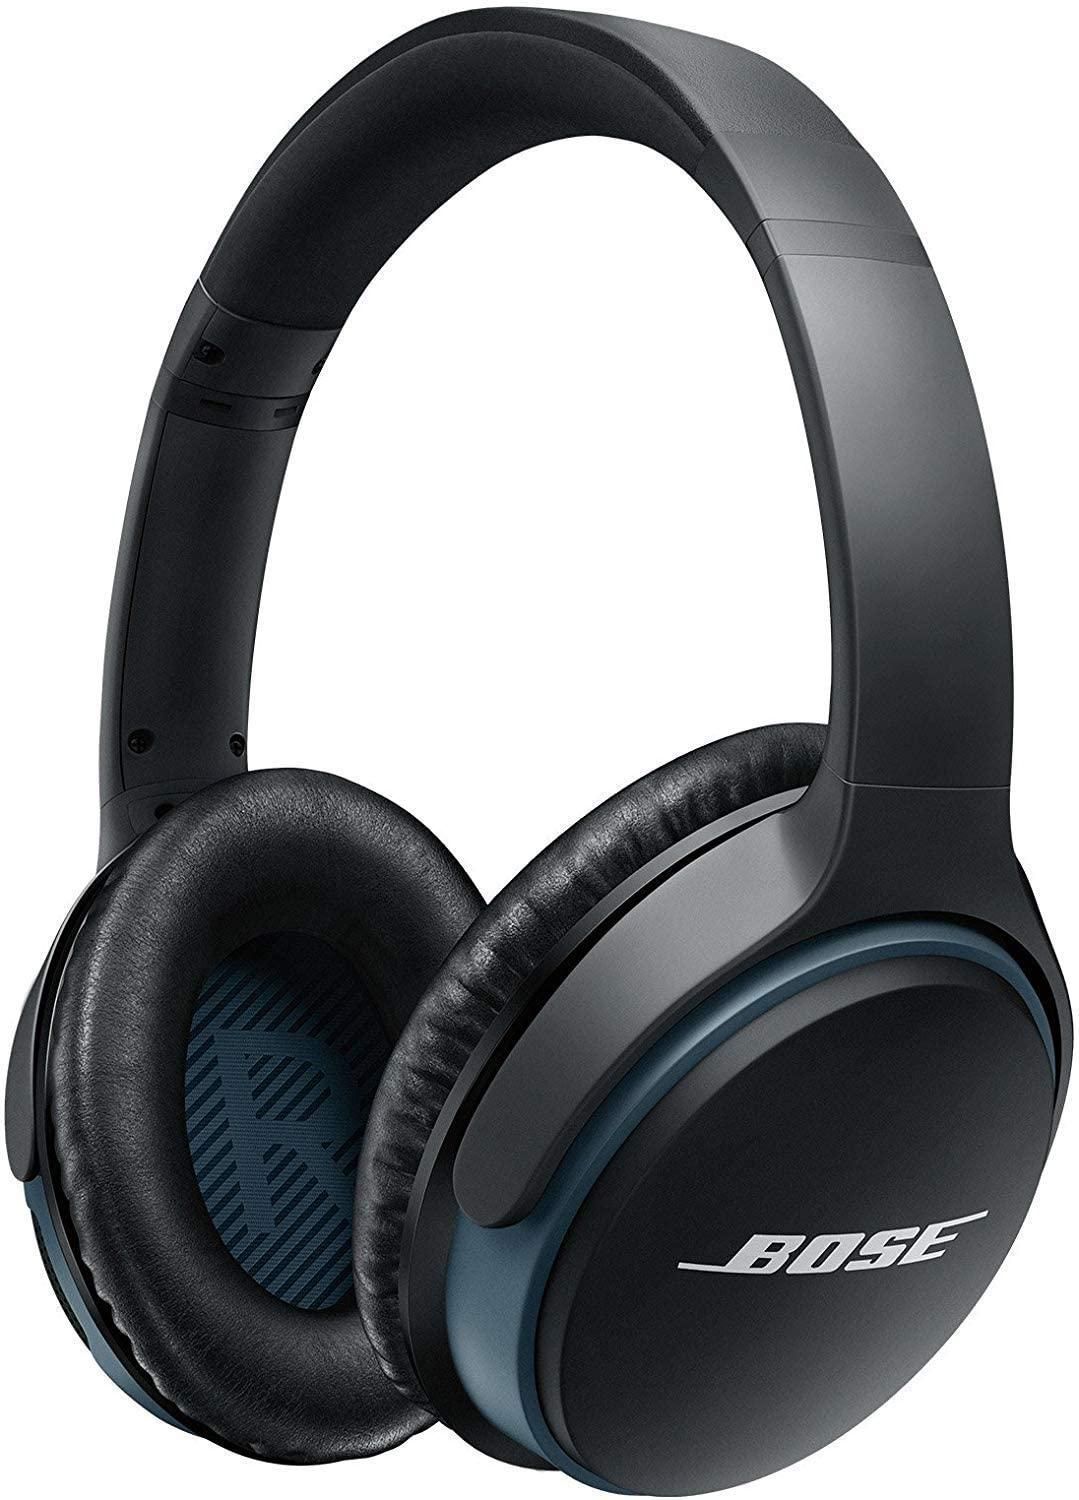 Bose SoundLink Çevreleyen Kablosuz Kulaklık II ürün kutusu resmi